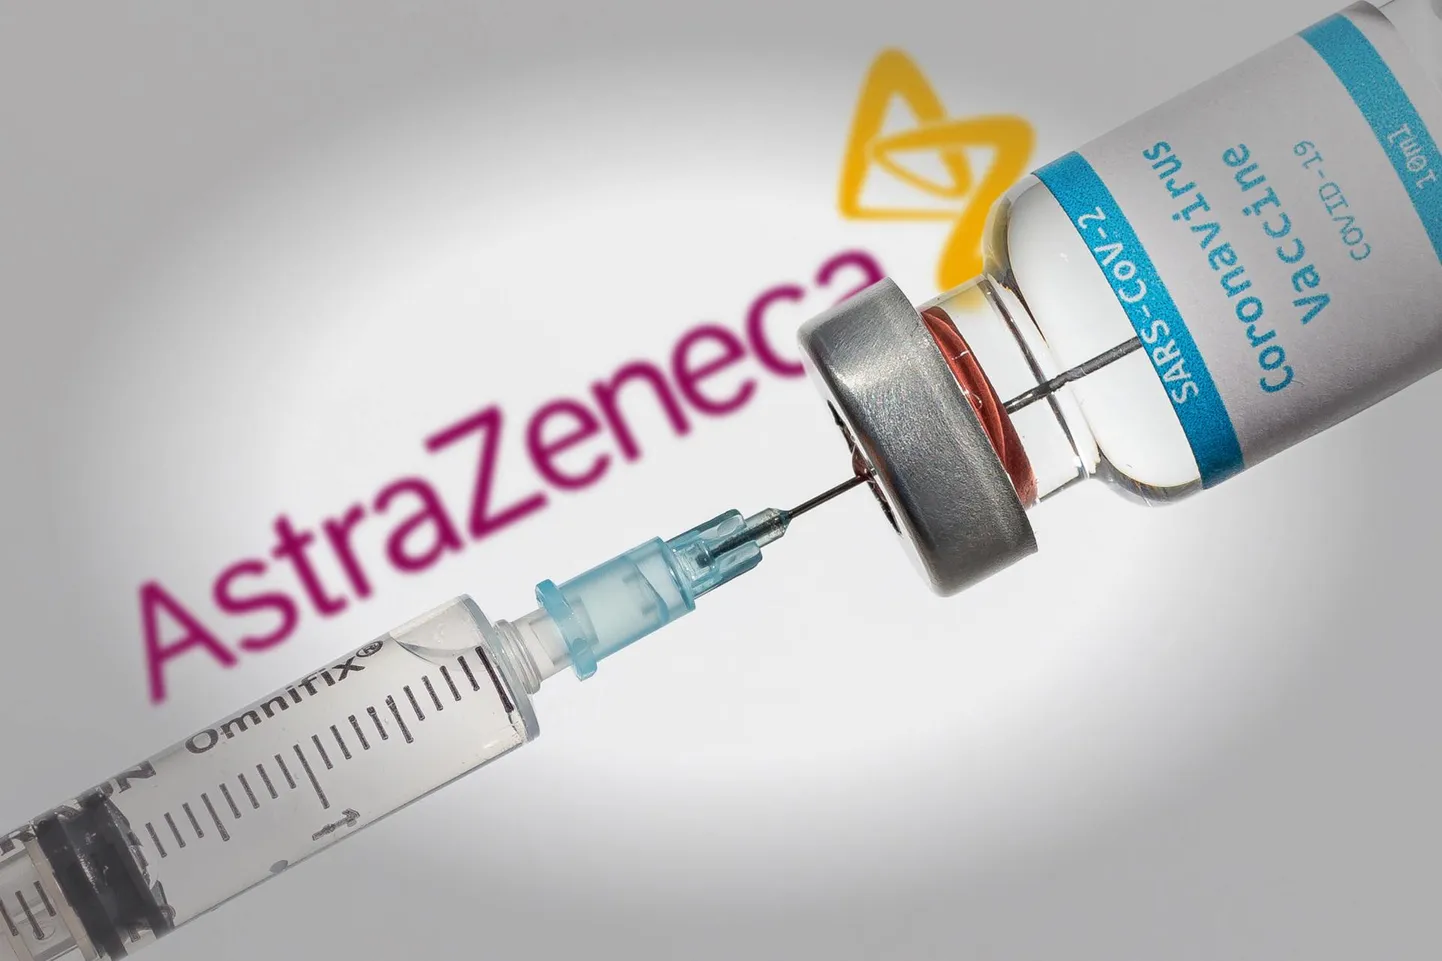 Эстония заключила предзакупочный договор с гигантом по производству медикаментов фирмой AstraZeneca, который при появлении отвечающей требованиям вакцины, должен обеспечить Эстонию 1 300 000 дозами для вакцинации 665 000 человек.